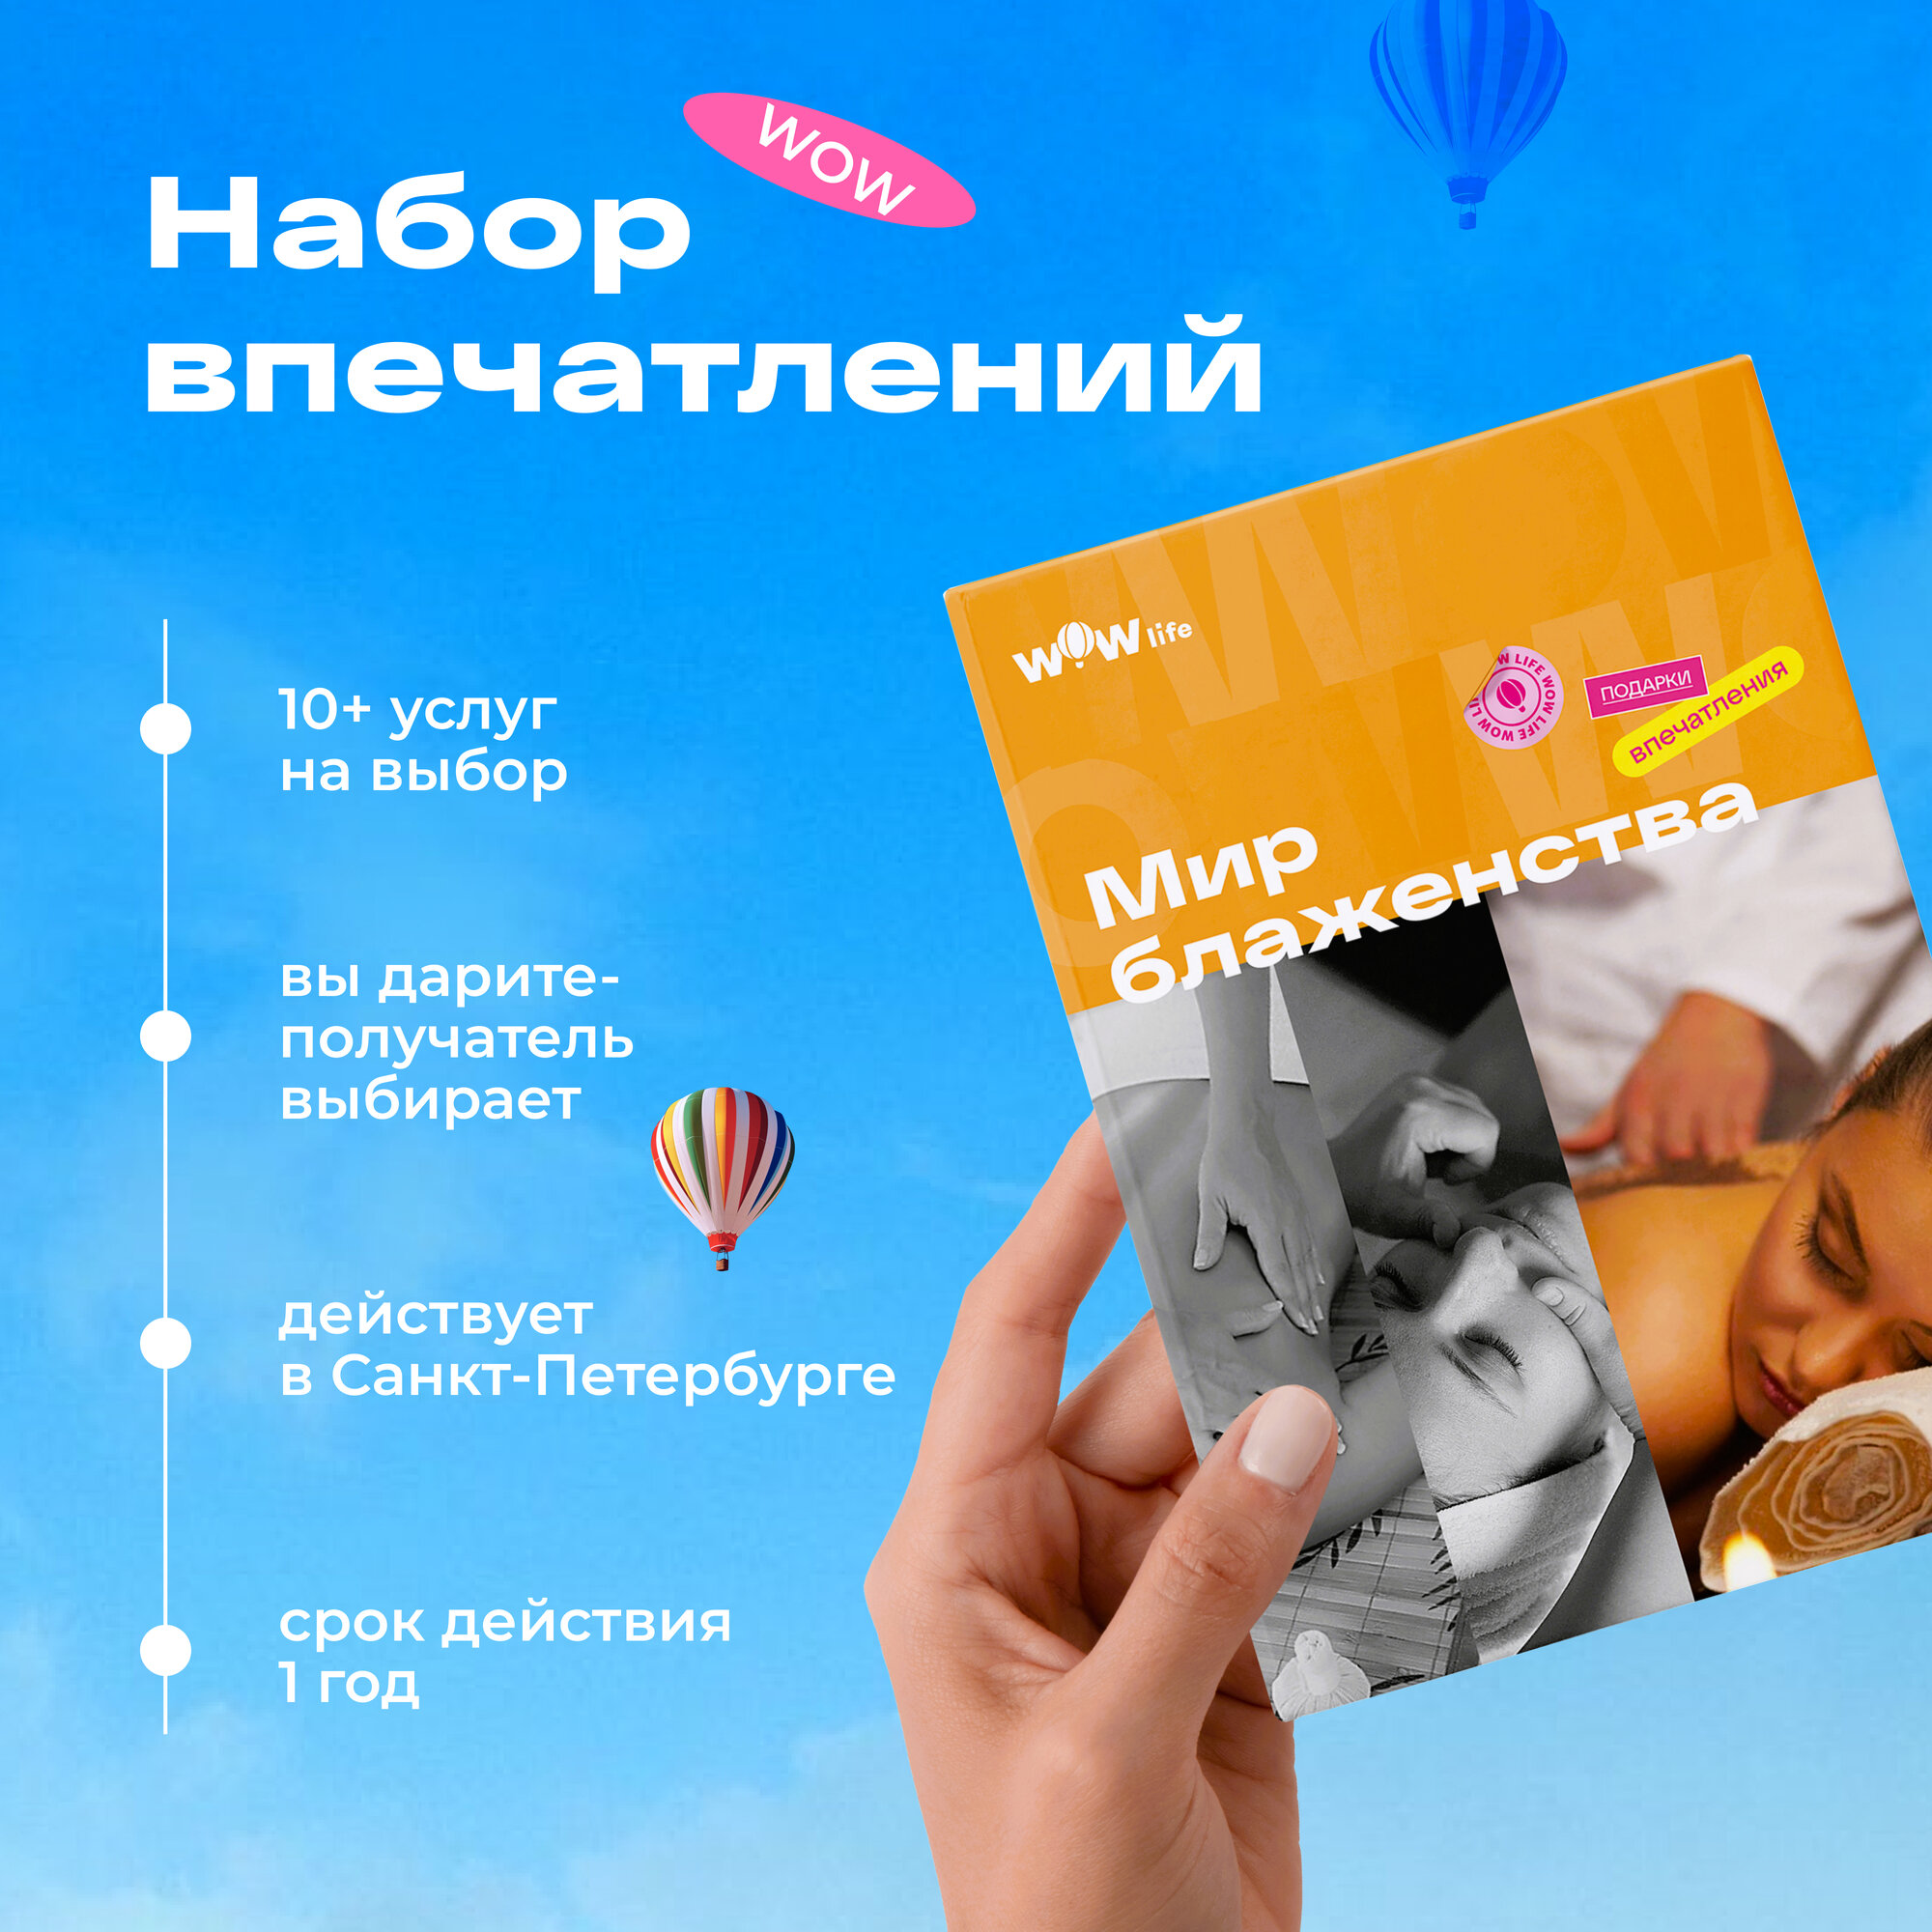 Подарочный сертификат WOWlife "Мир блаженства" - набор из впечатлений на выбор, Санкт-Петербург